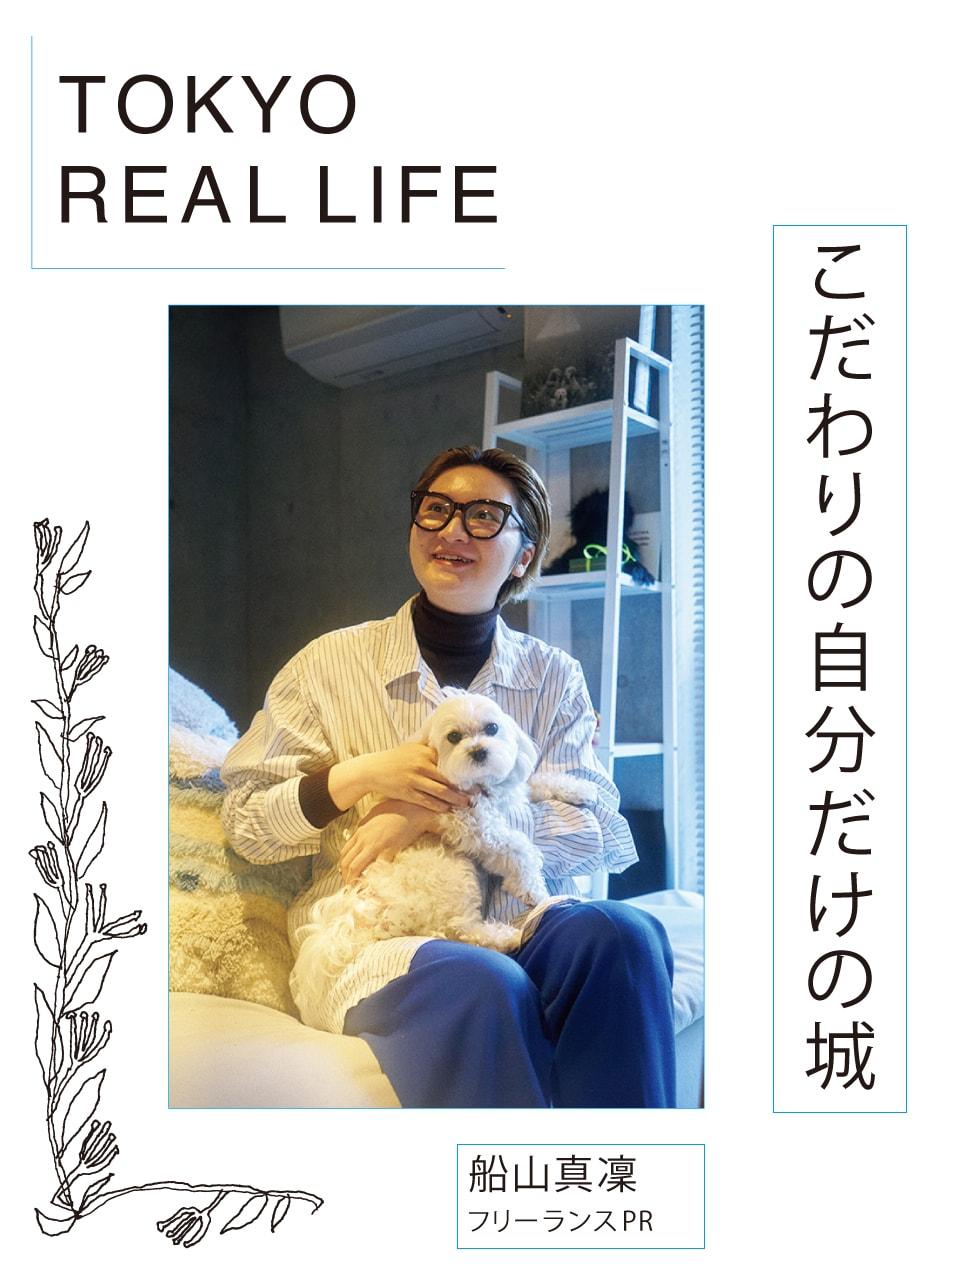 「ここにあるのは 本当に必要なものだけ」【 TOKYO REAL LIFE vol.11 船山真凜さん】